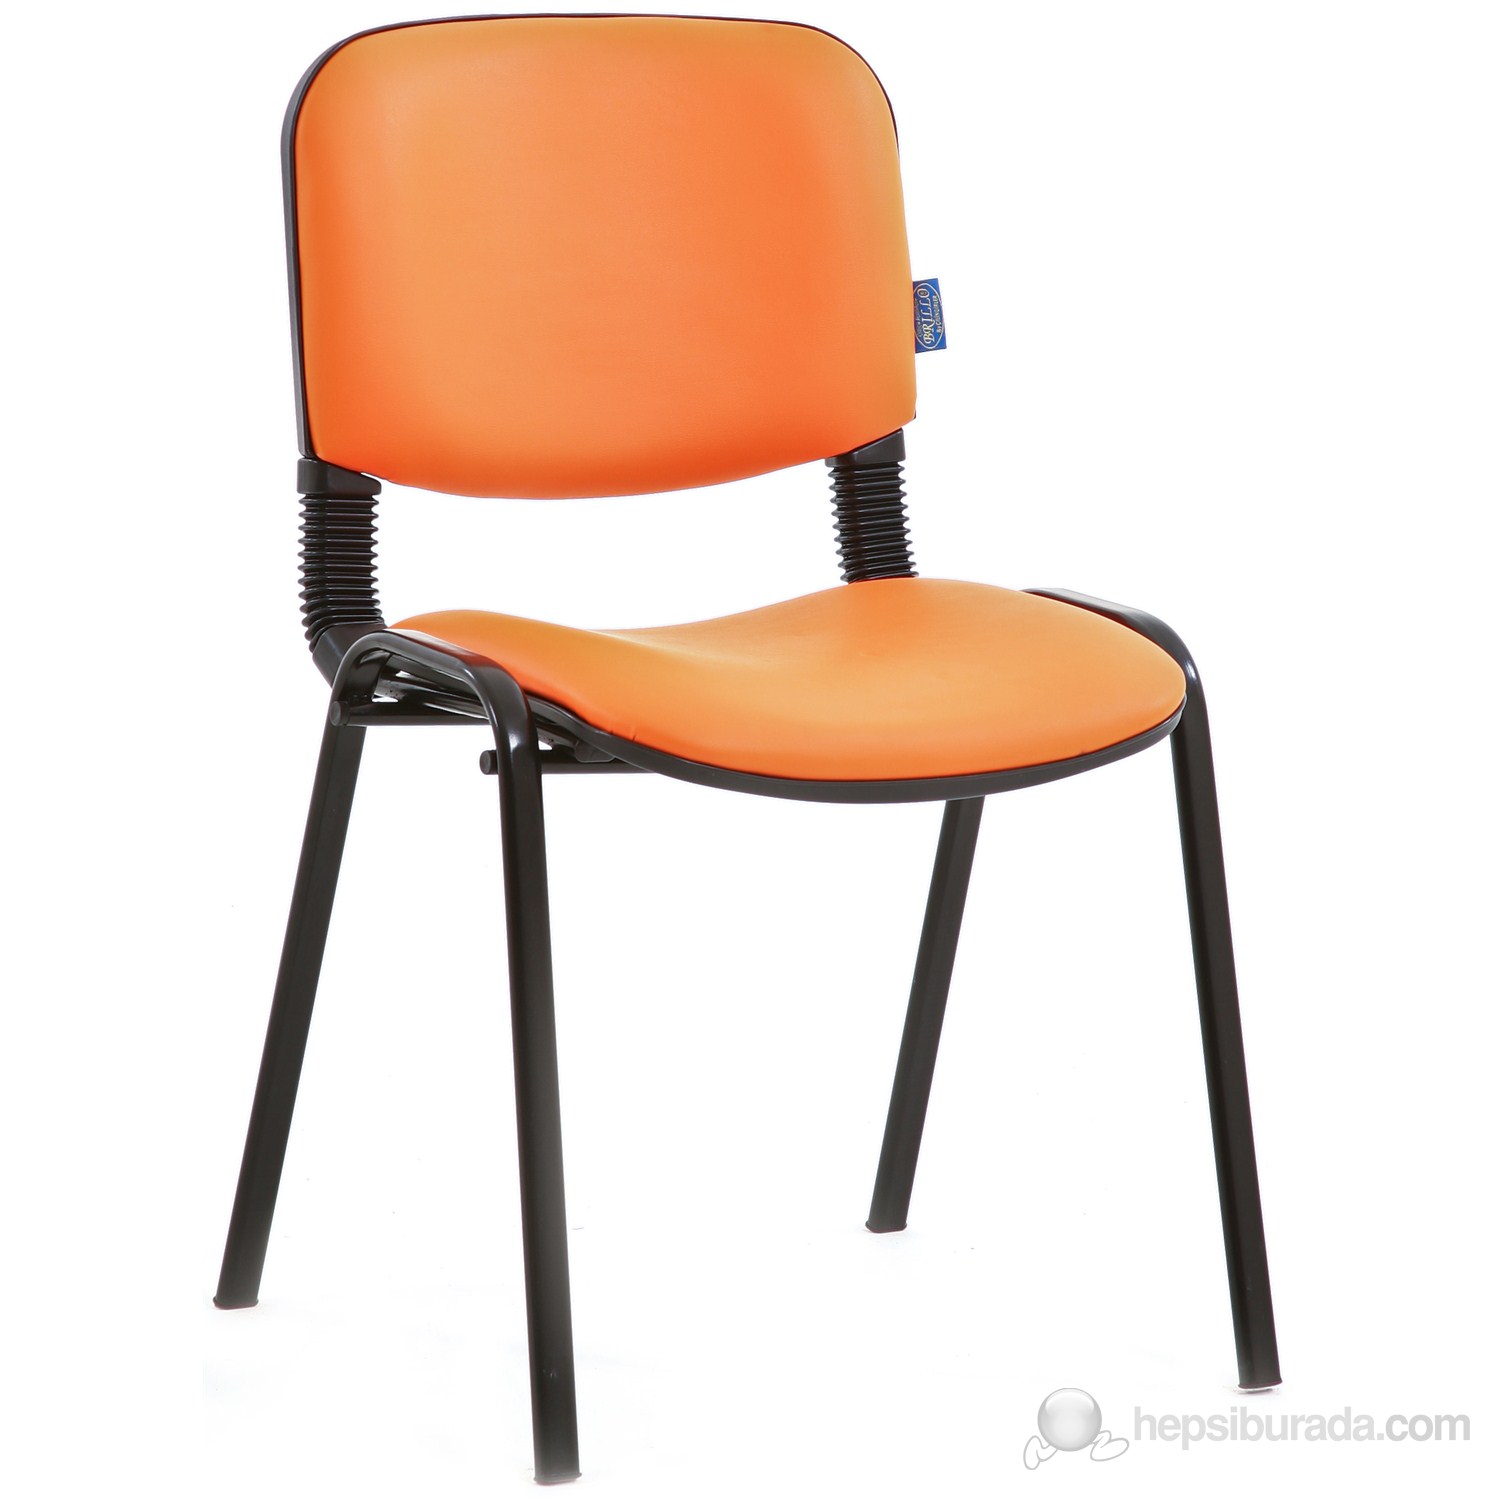 Koltuk Form Sandalye - Turuncu